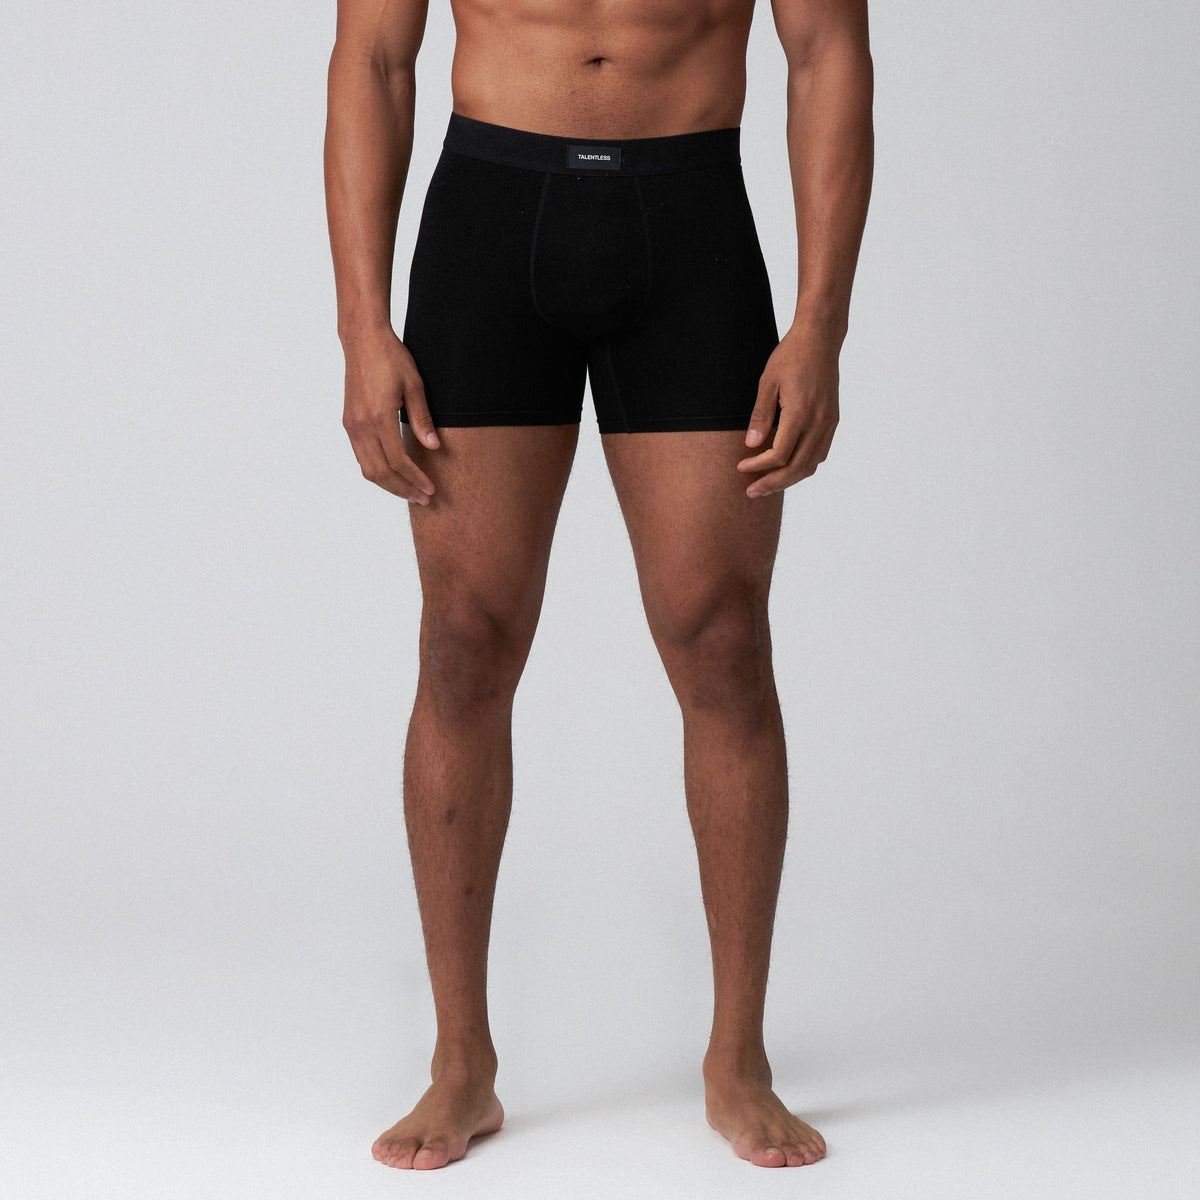 3 Boxer Briefs Underwear Subscription – BrainlessWear